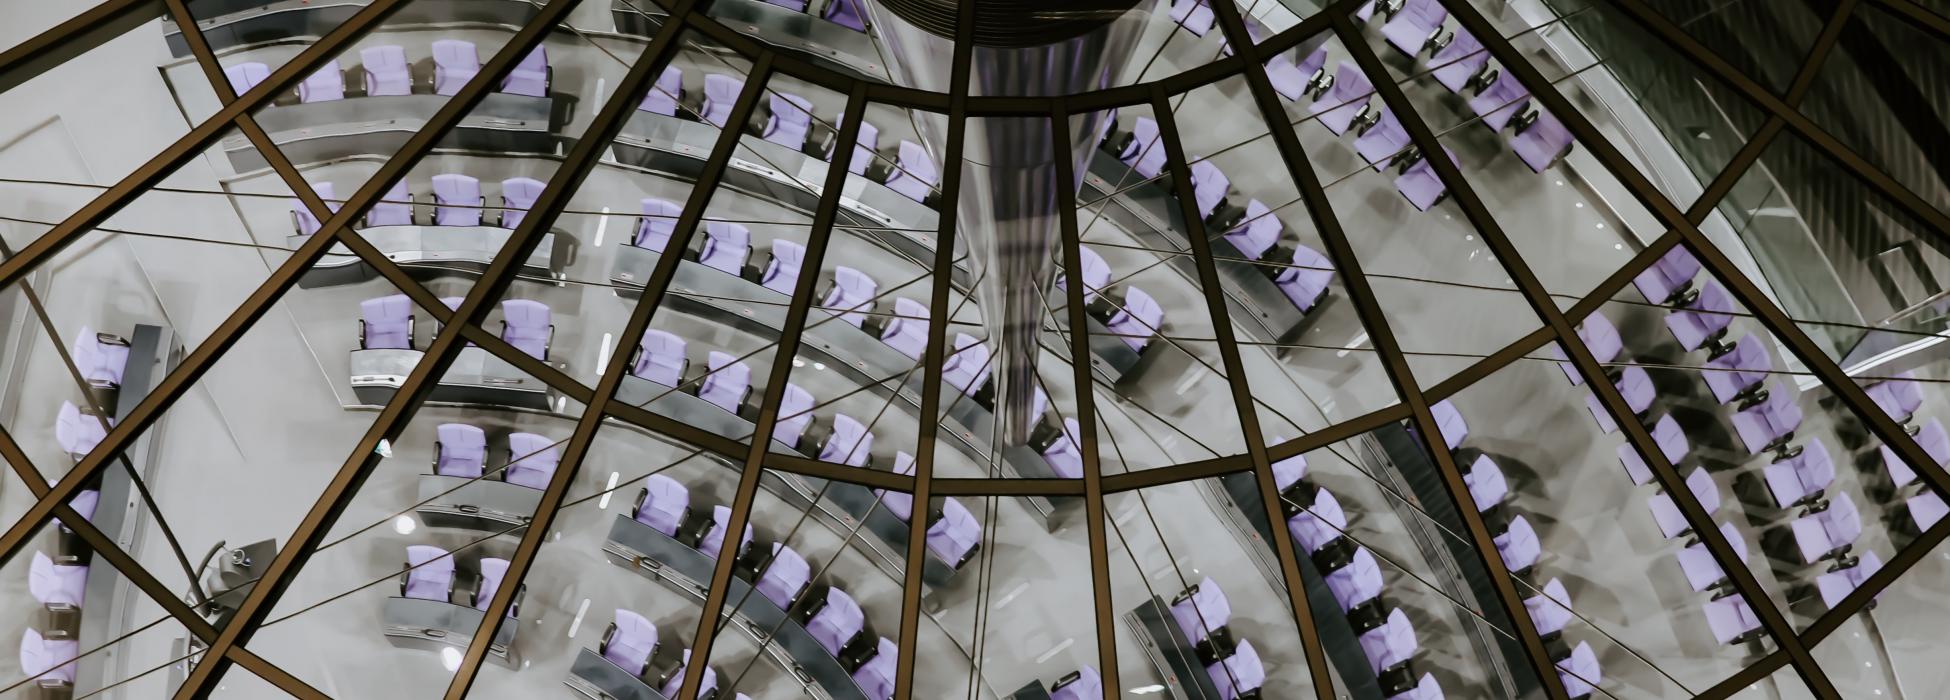 Sitze im Bundestag